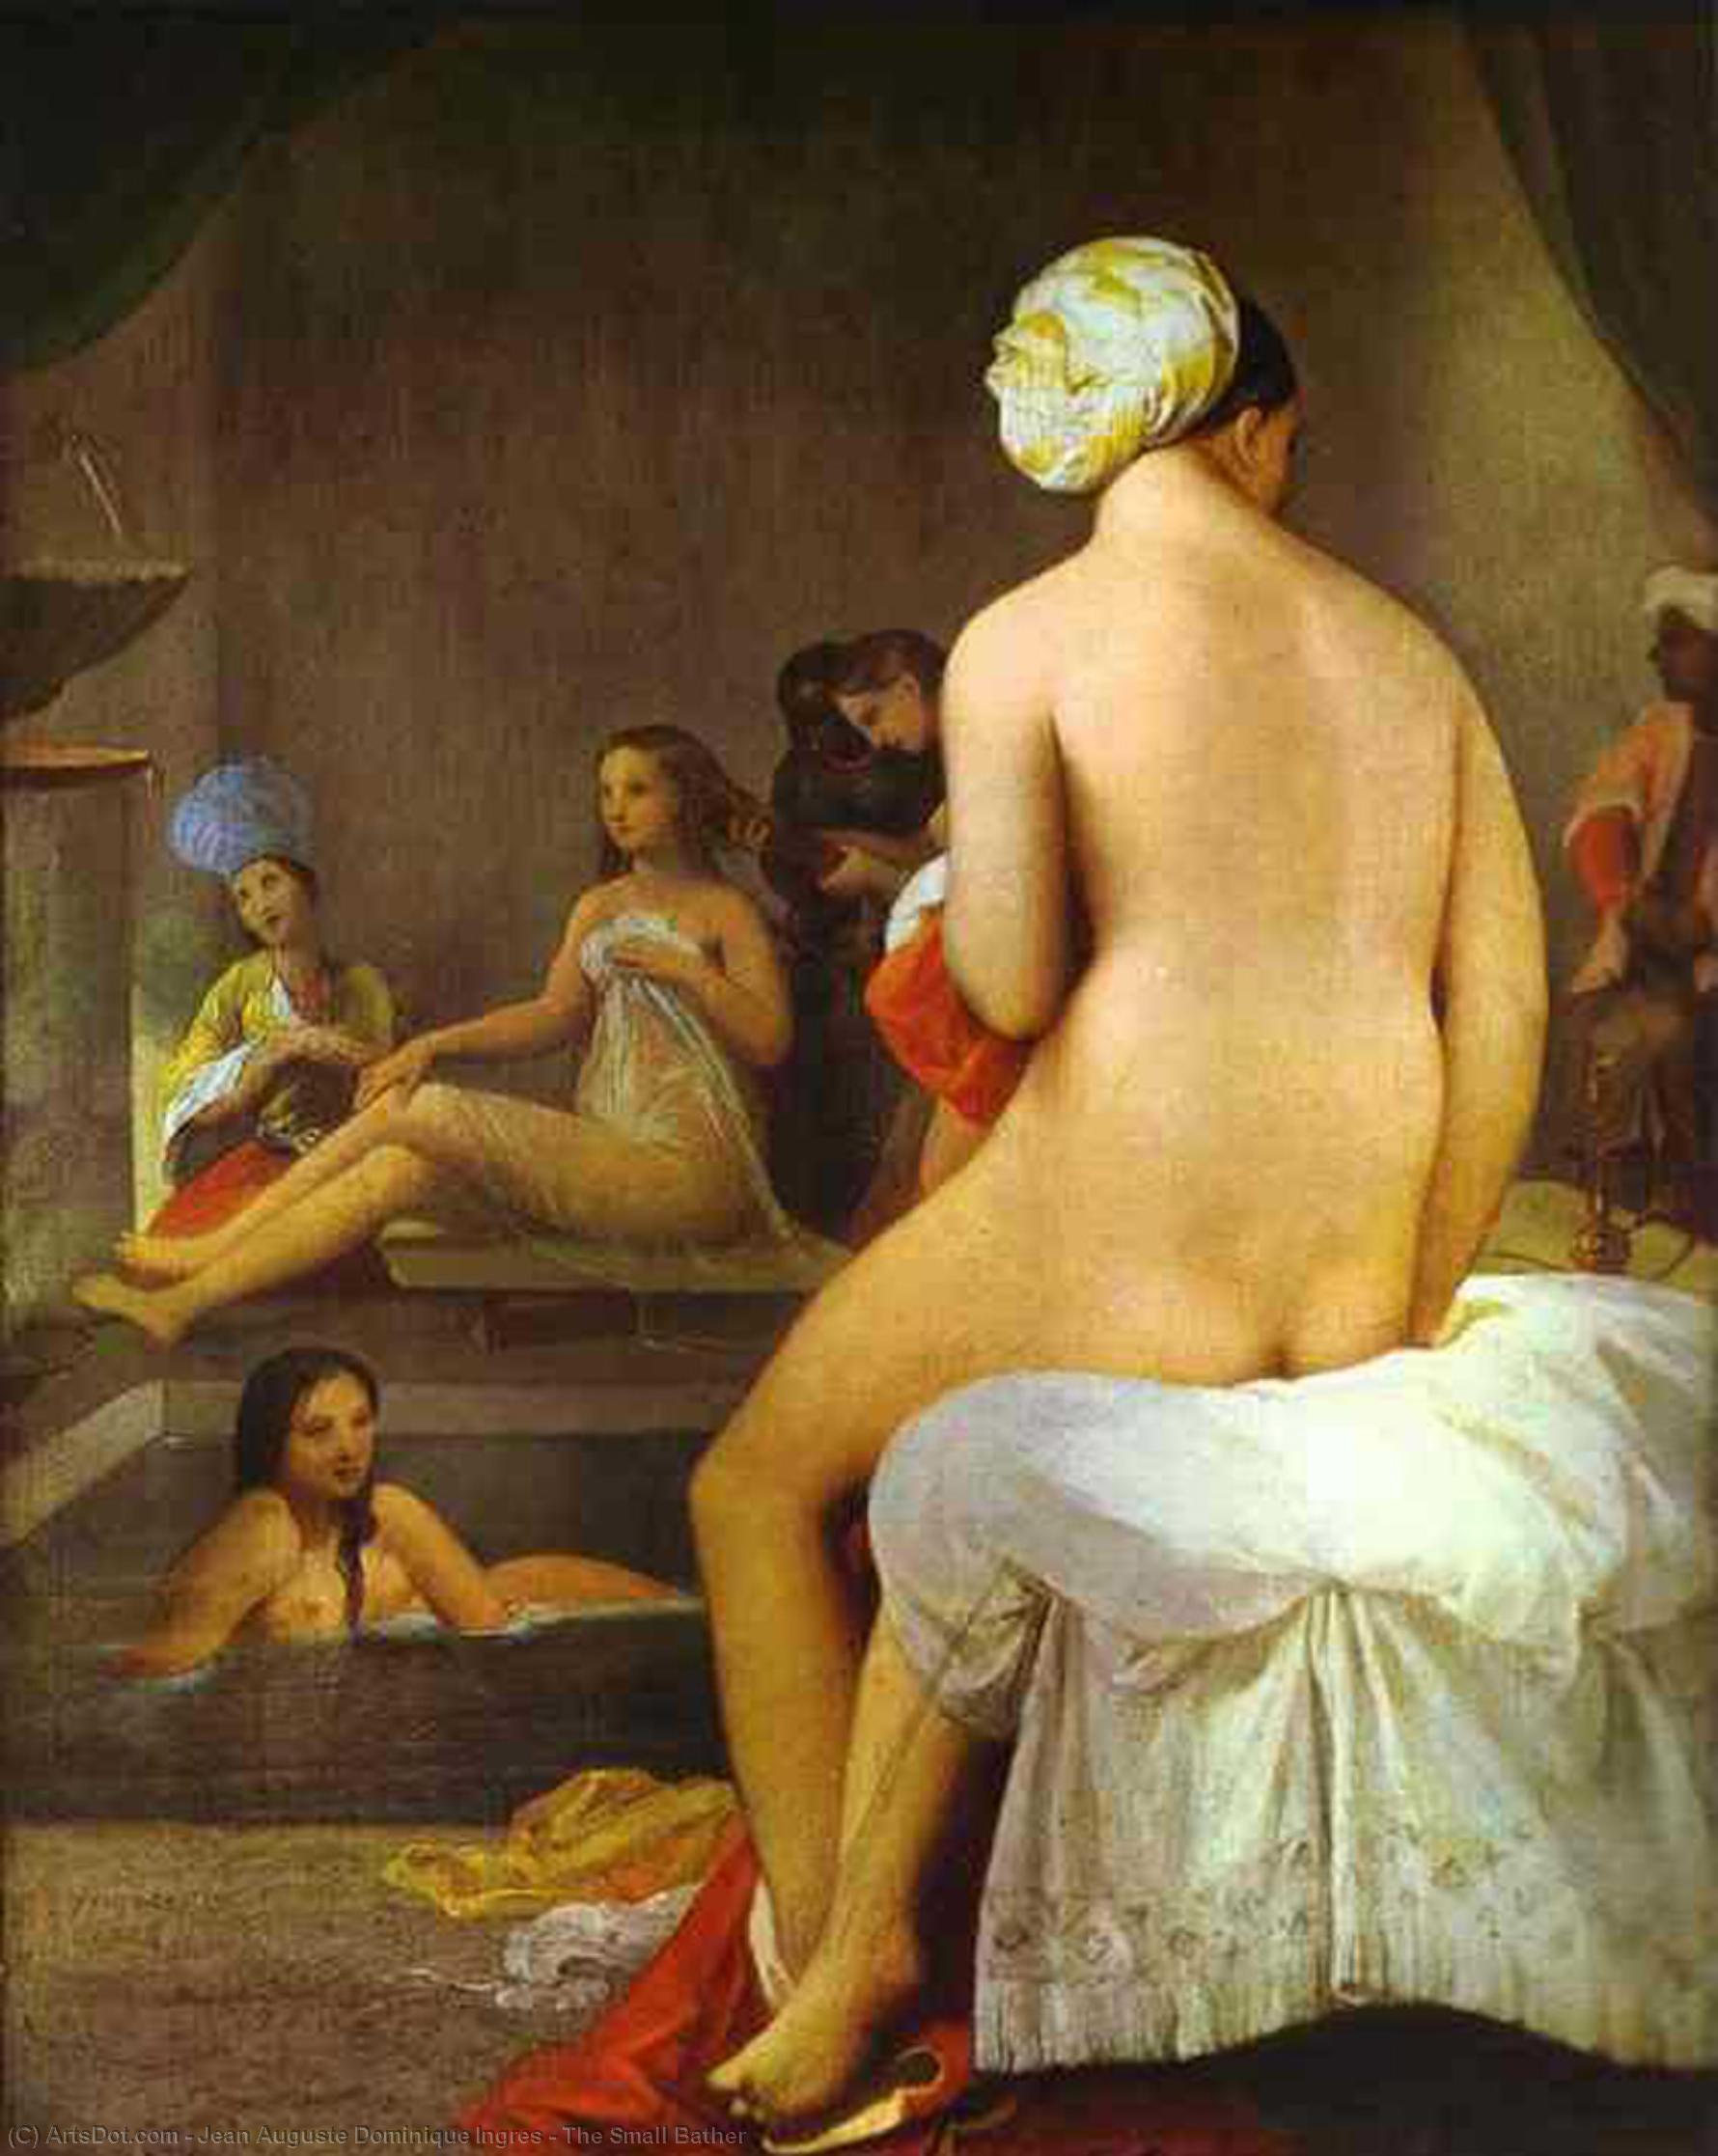 WikiOO.org - אנציקלופדיה לאמנויות יפות - ציור, יצירות אמנות Jean Auguste Dominique Ingres - The Small Bather